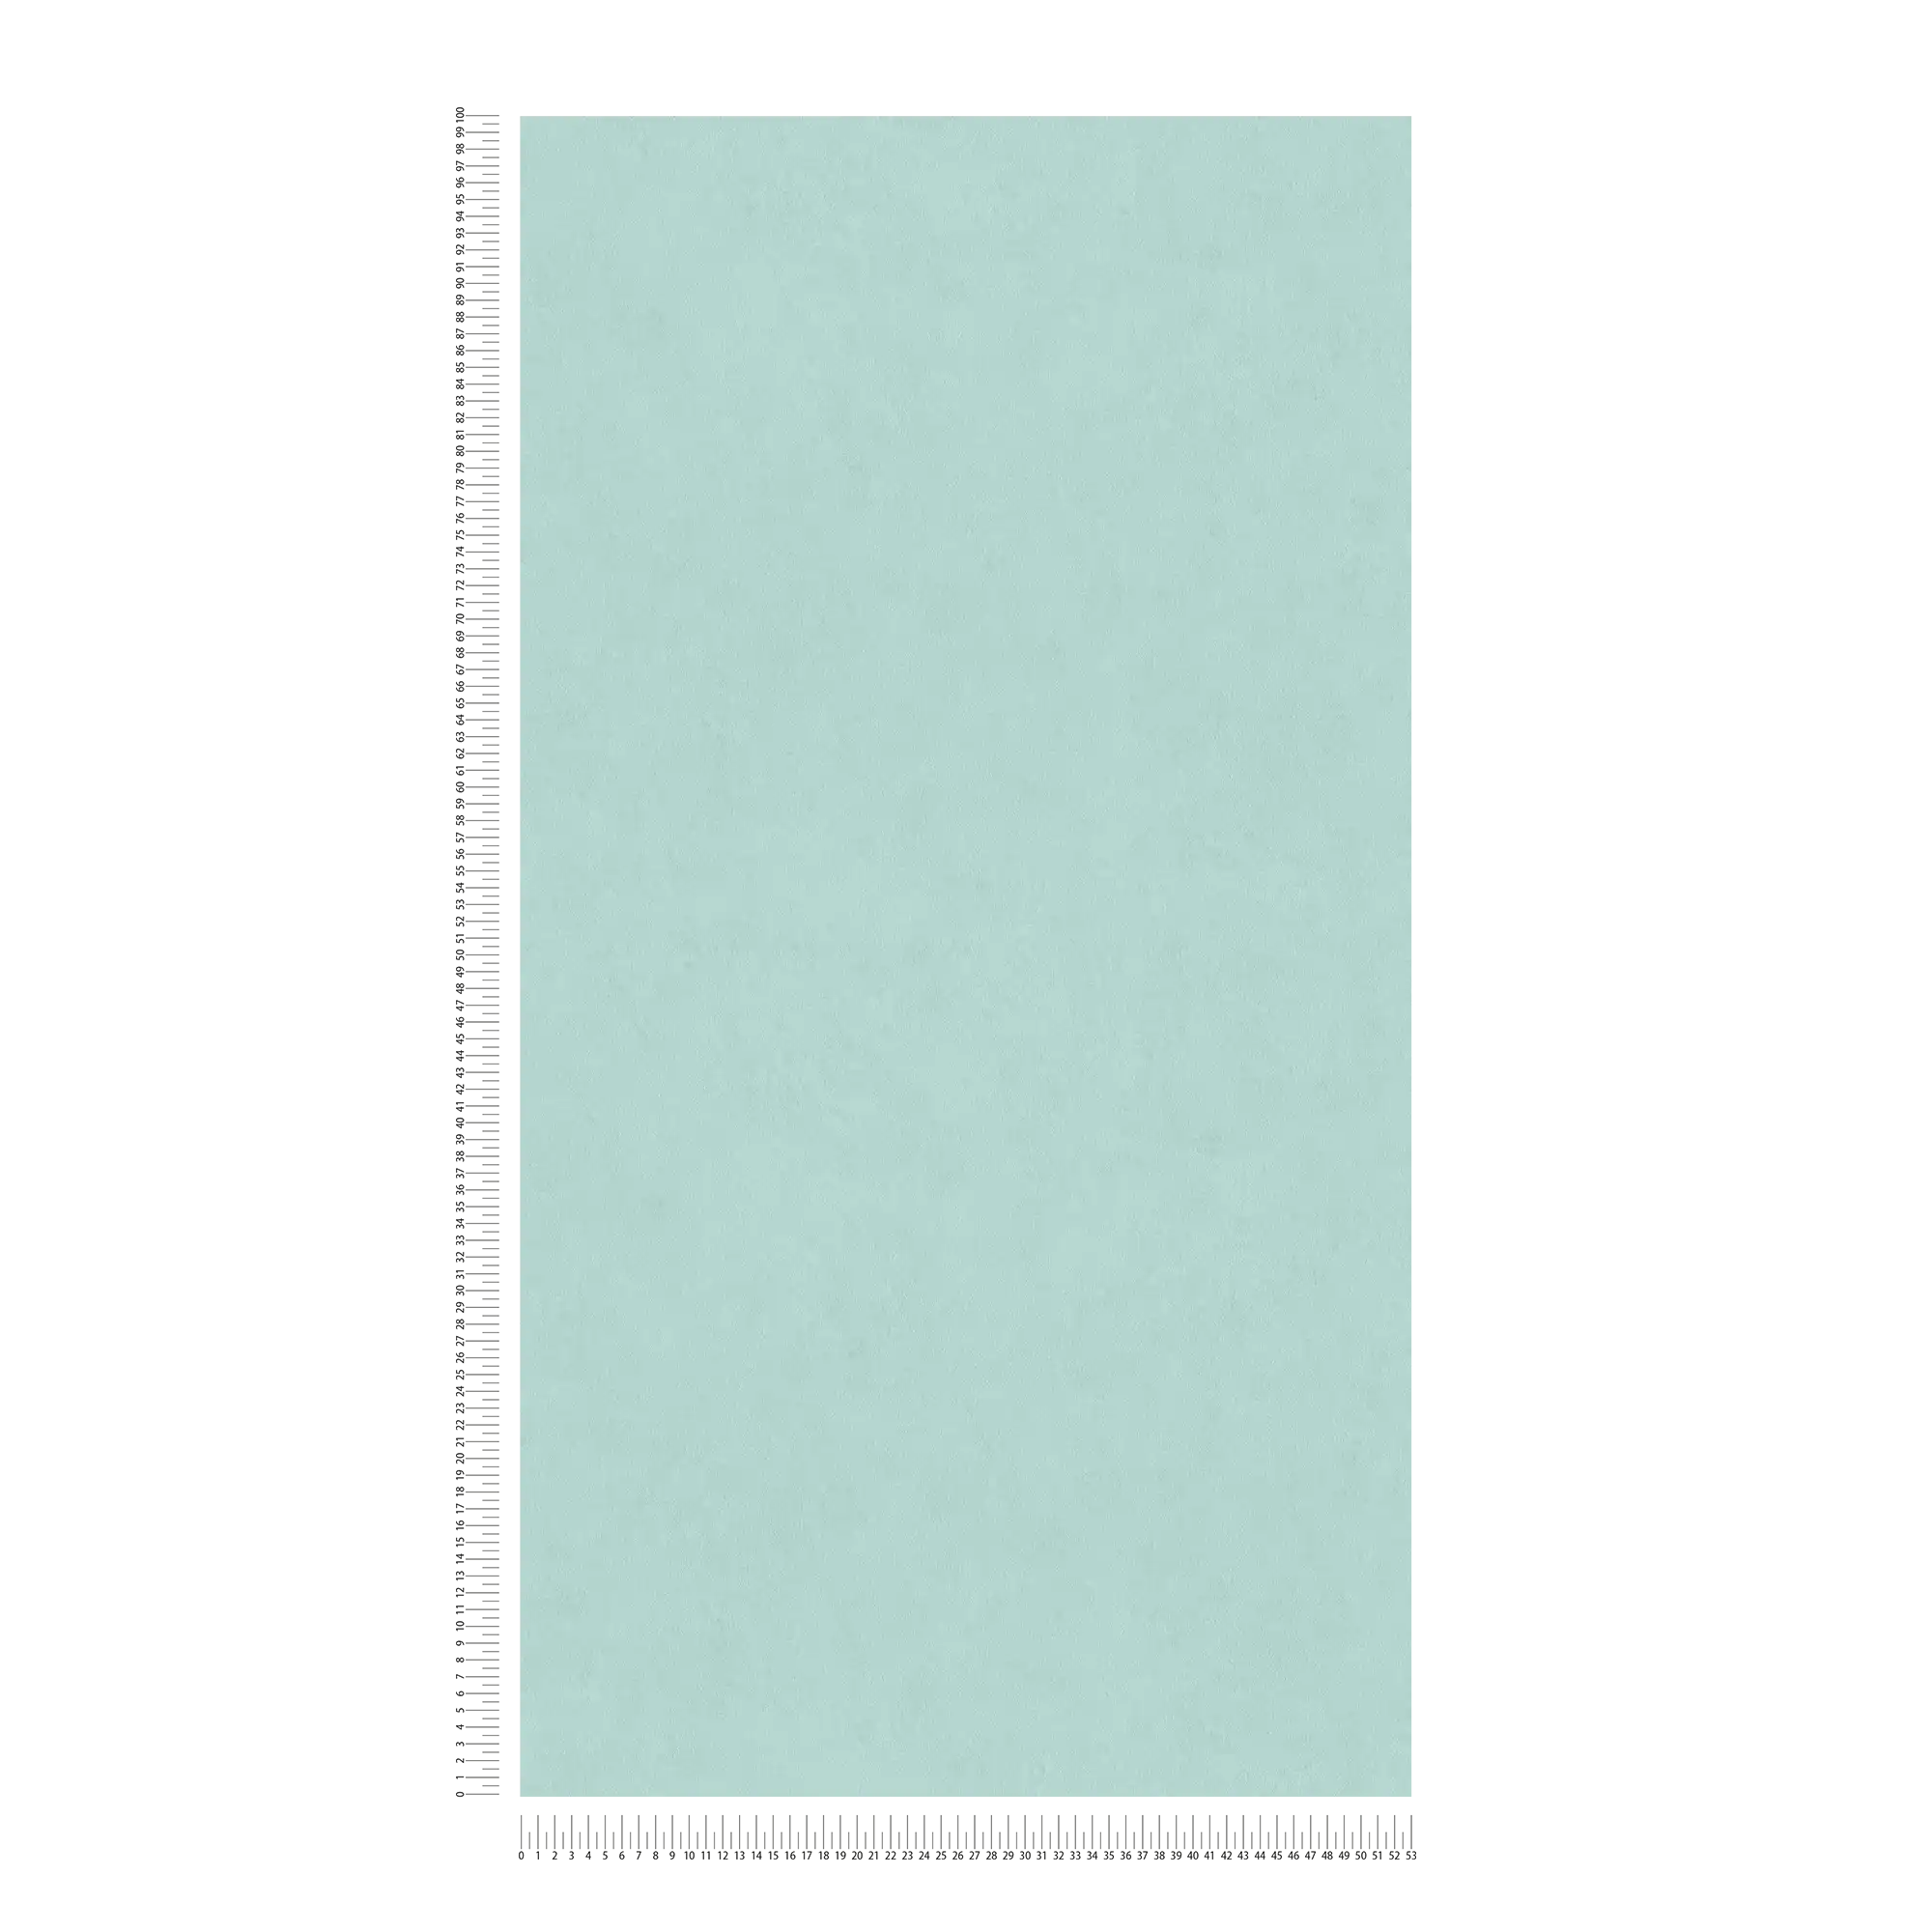             Papier peint intissé uni - turquoise
        